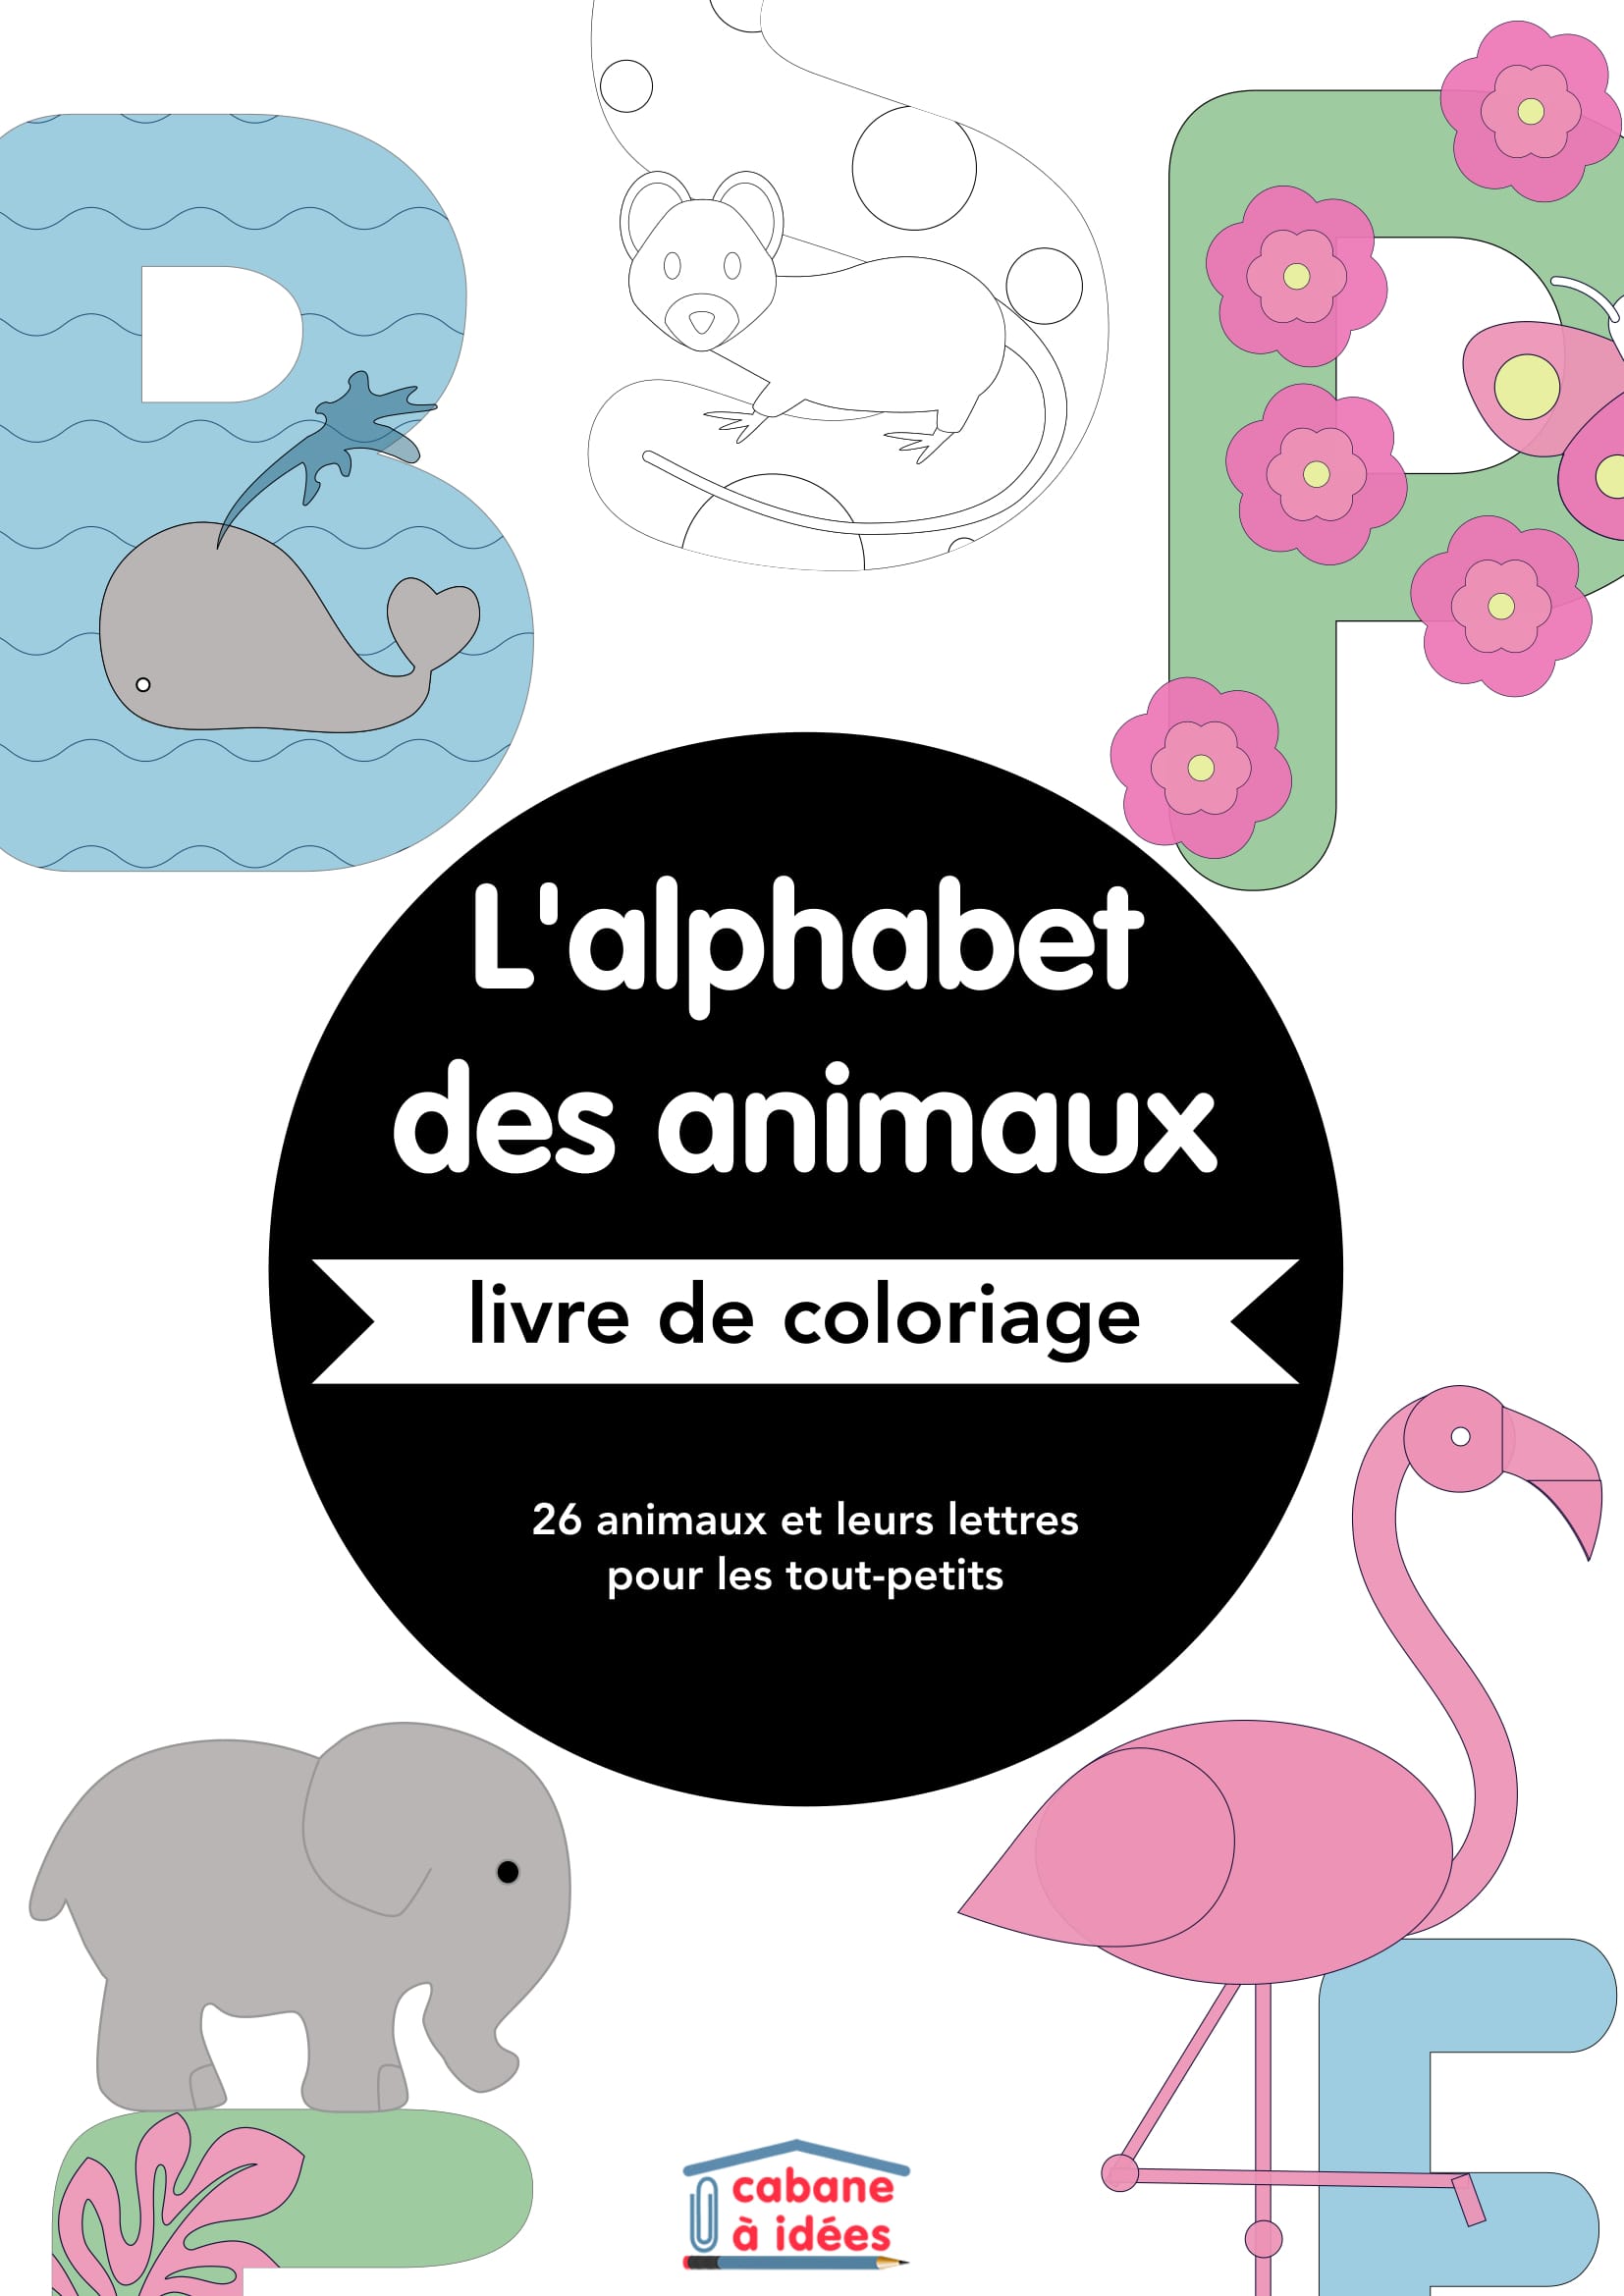 Les tout petits aiment souvent colorier Proposez leur ce cahier de coloriage alphabet animaux pour leur faire découvrir les lettres de l alphabet et des